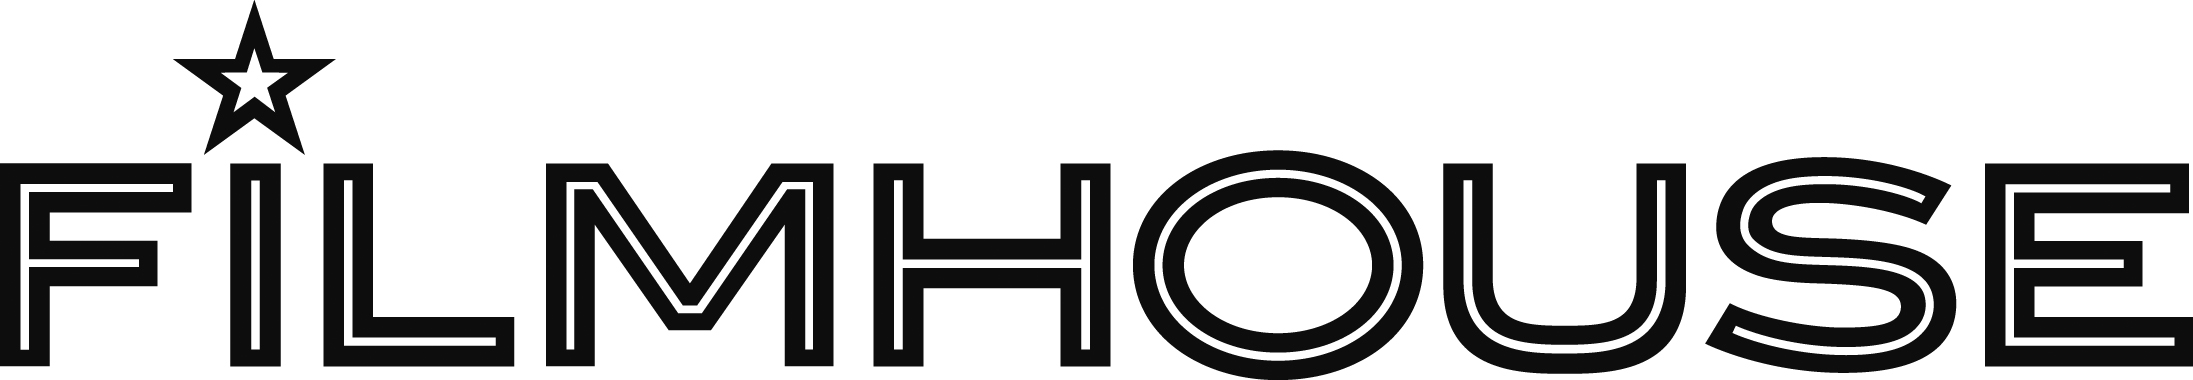 Filmhouse_logo(black)